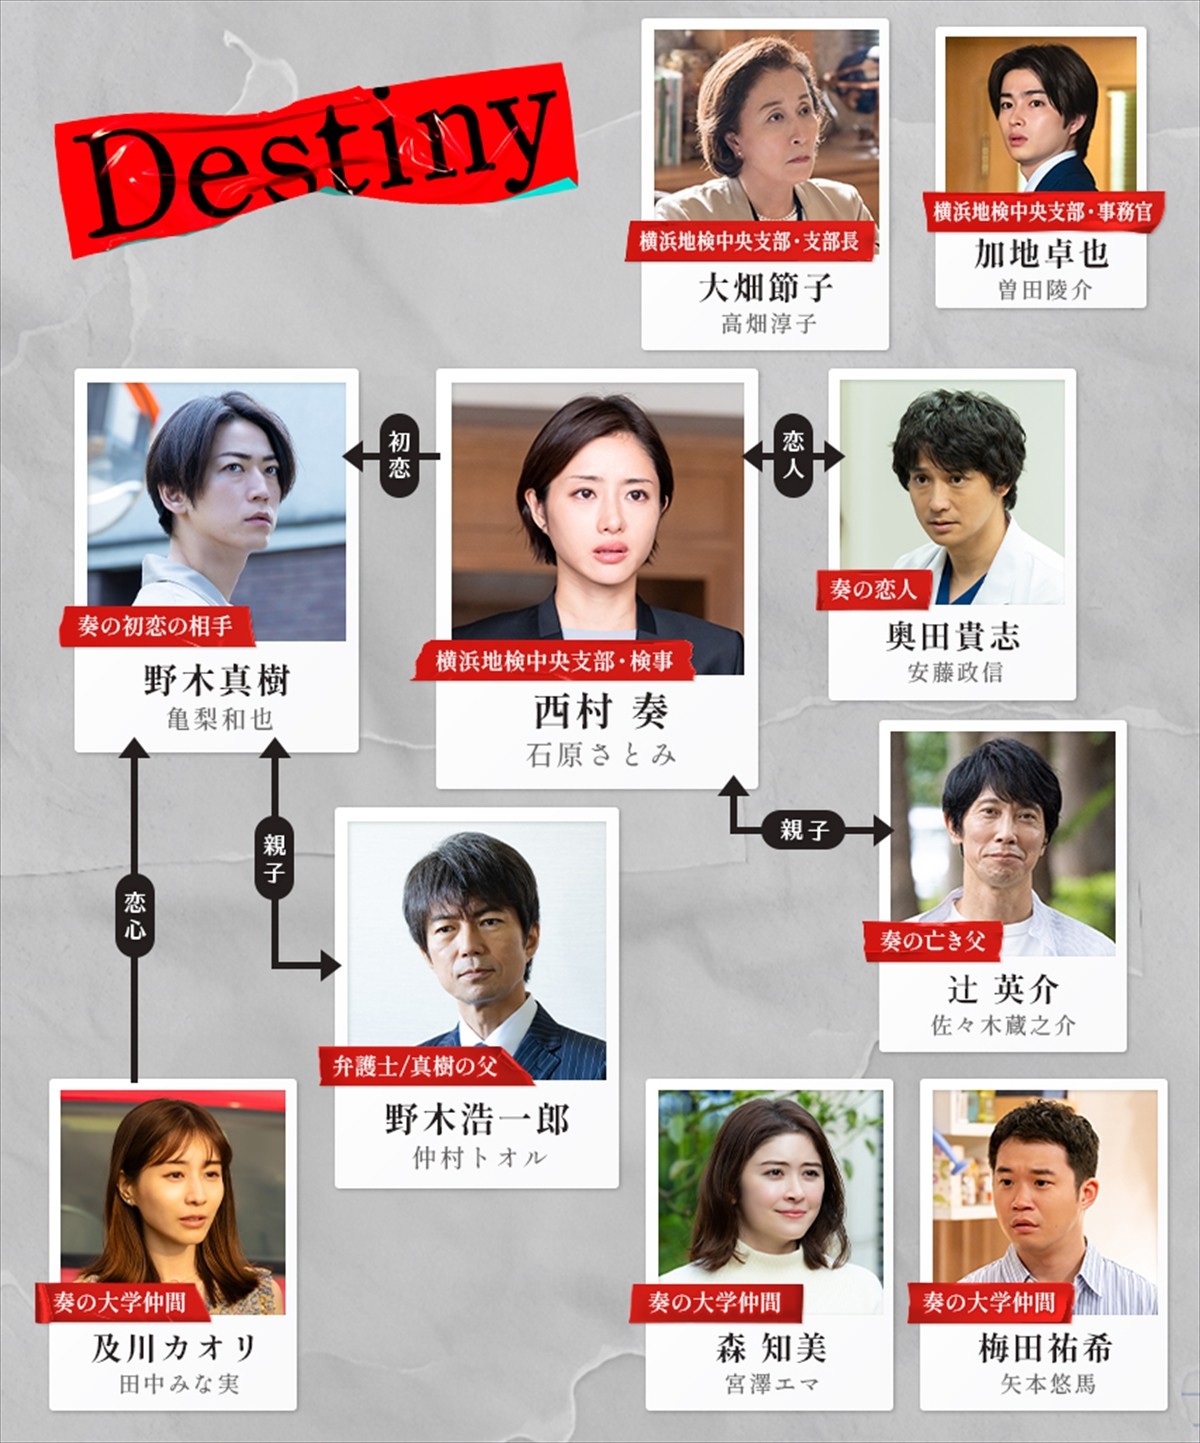 高畑淳子、新ドラマ『Destiny』で石原さとみと12年ぶり共演「円熟して素敵な女優になった」